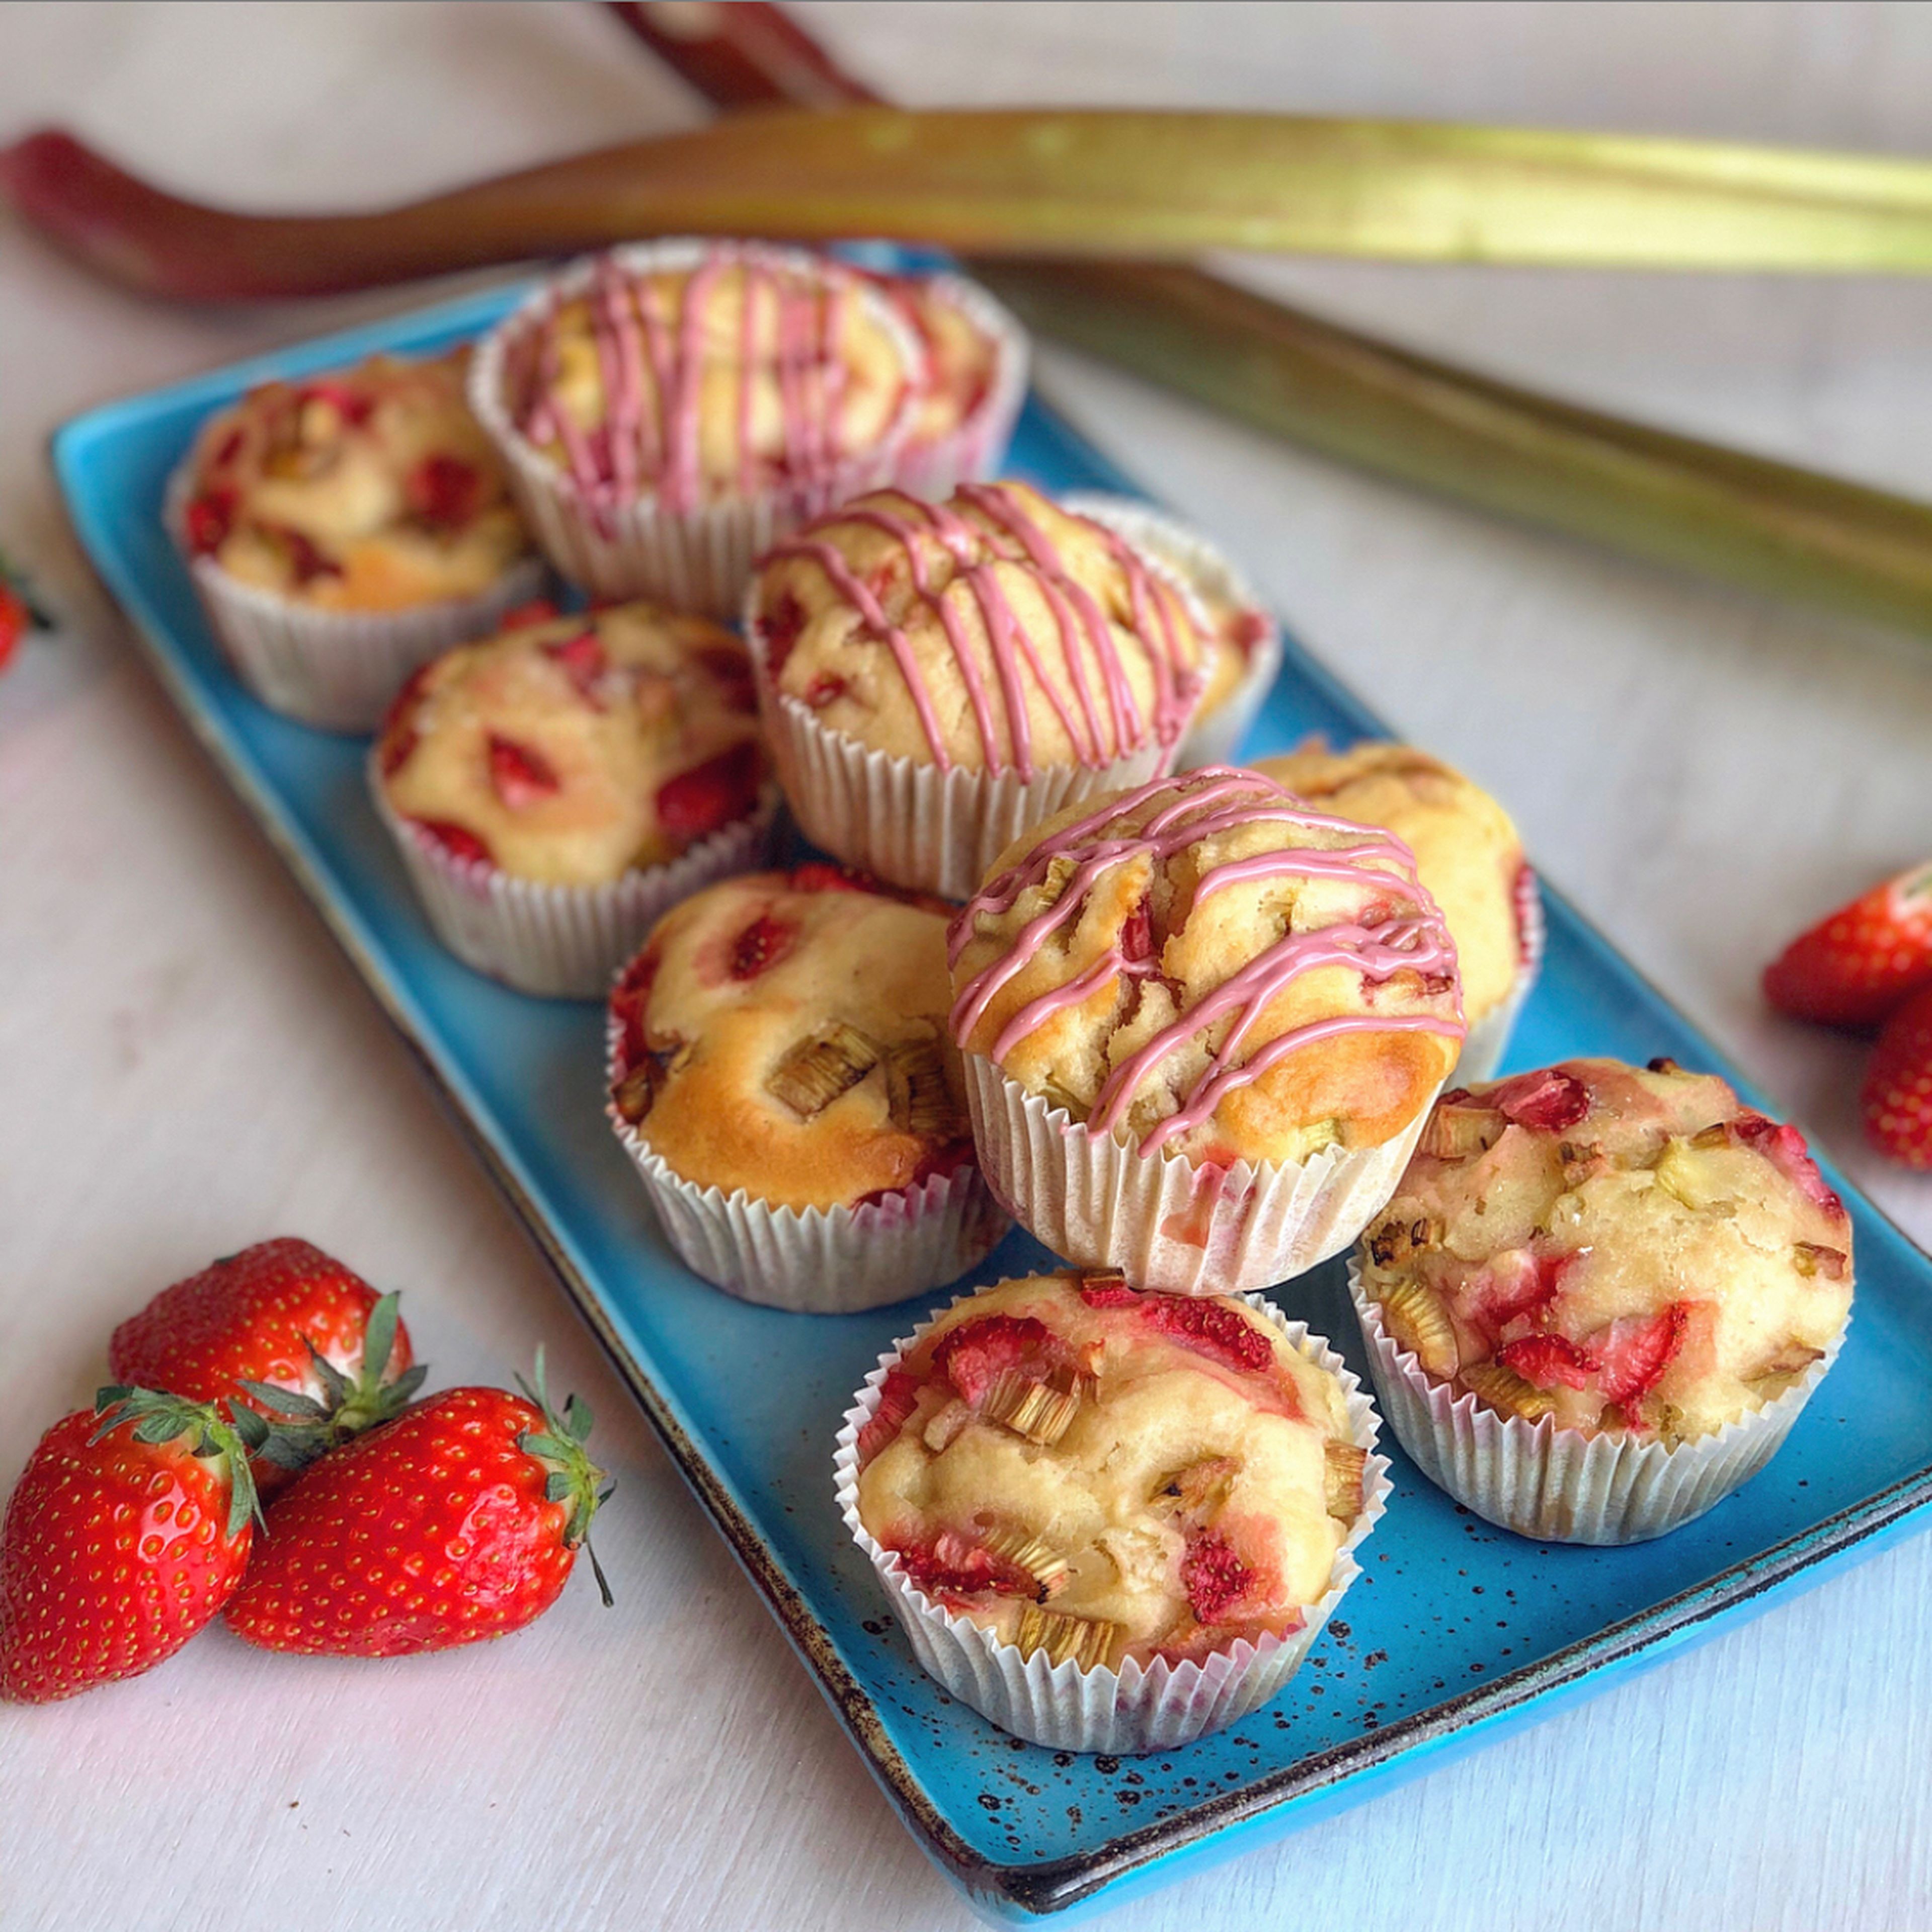 Strawberry rhubarb muffins